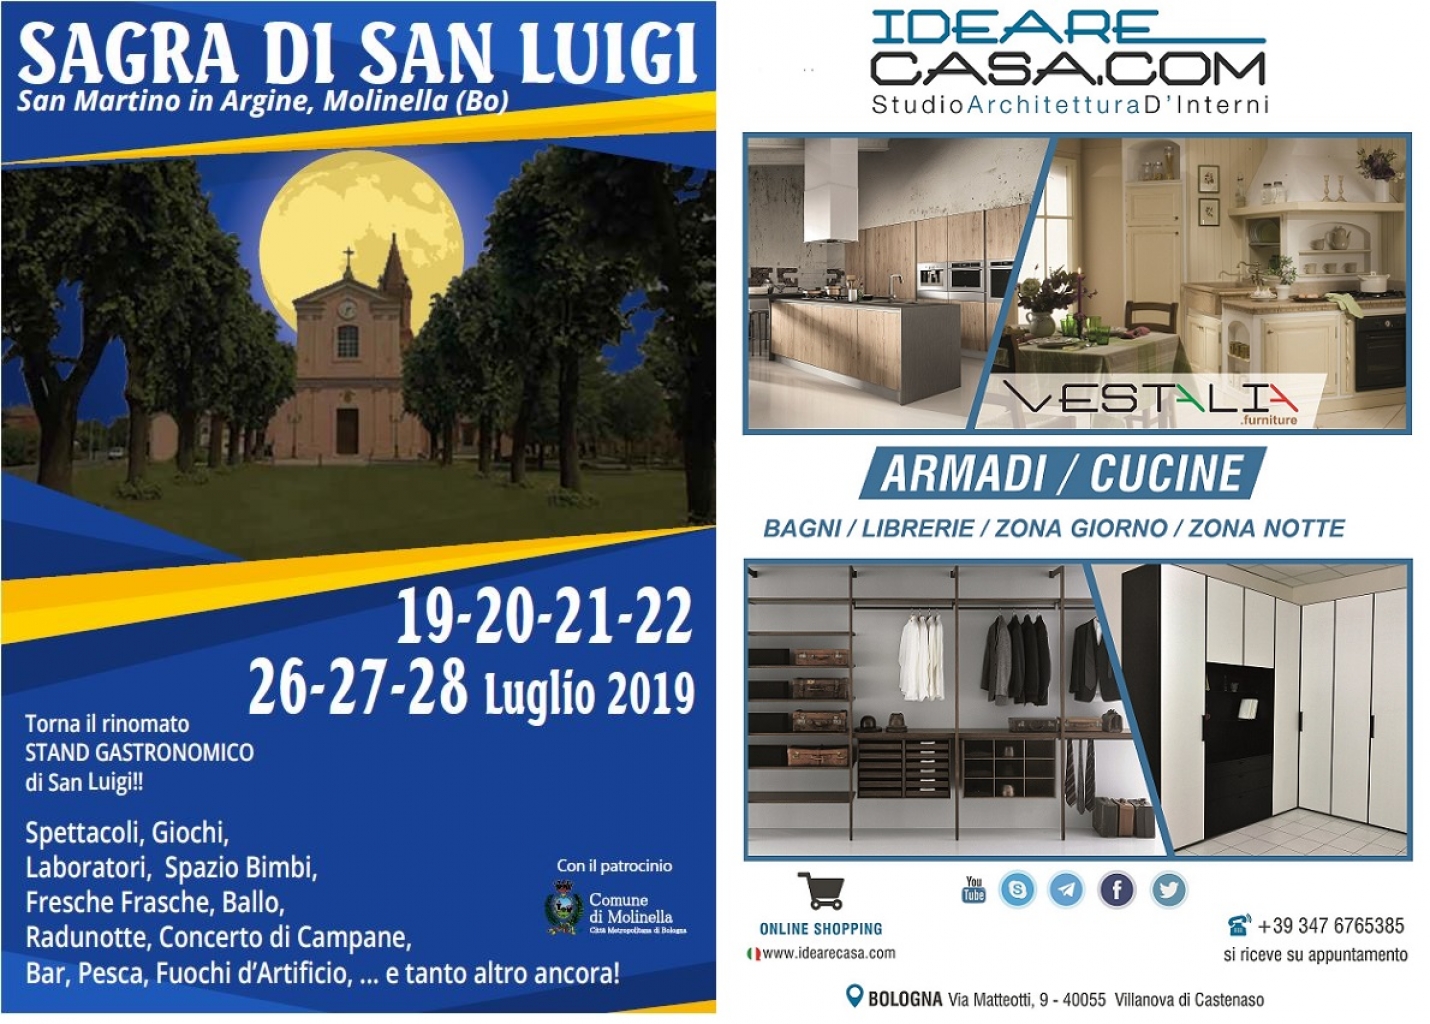 IdeareCasa e VESTALIA sponsor della Sagra di San Luigi 2019